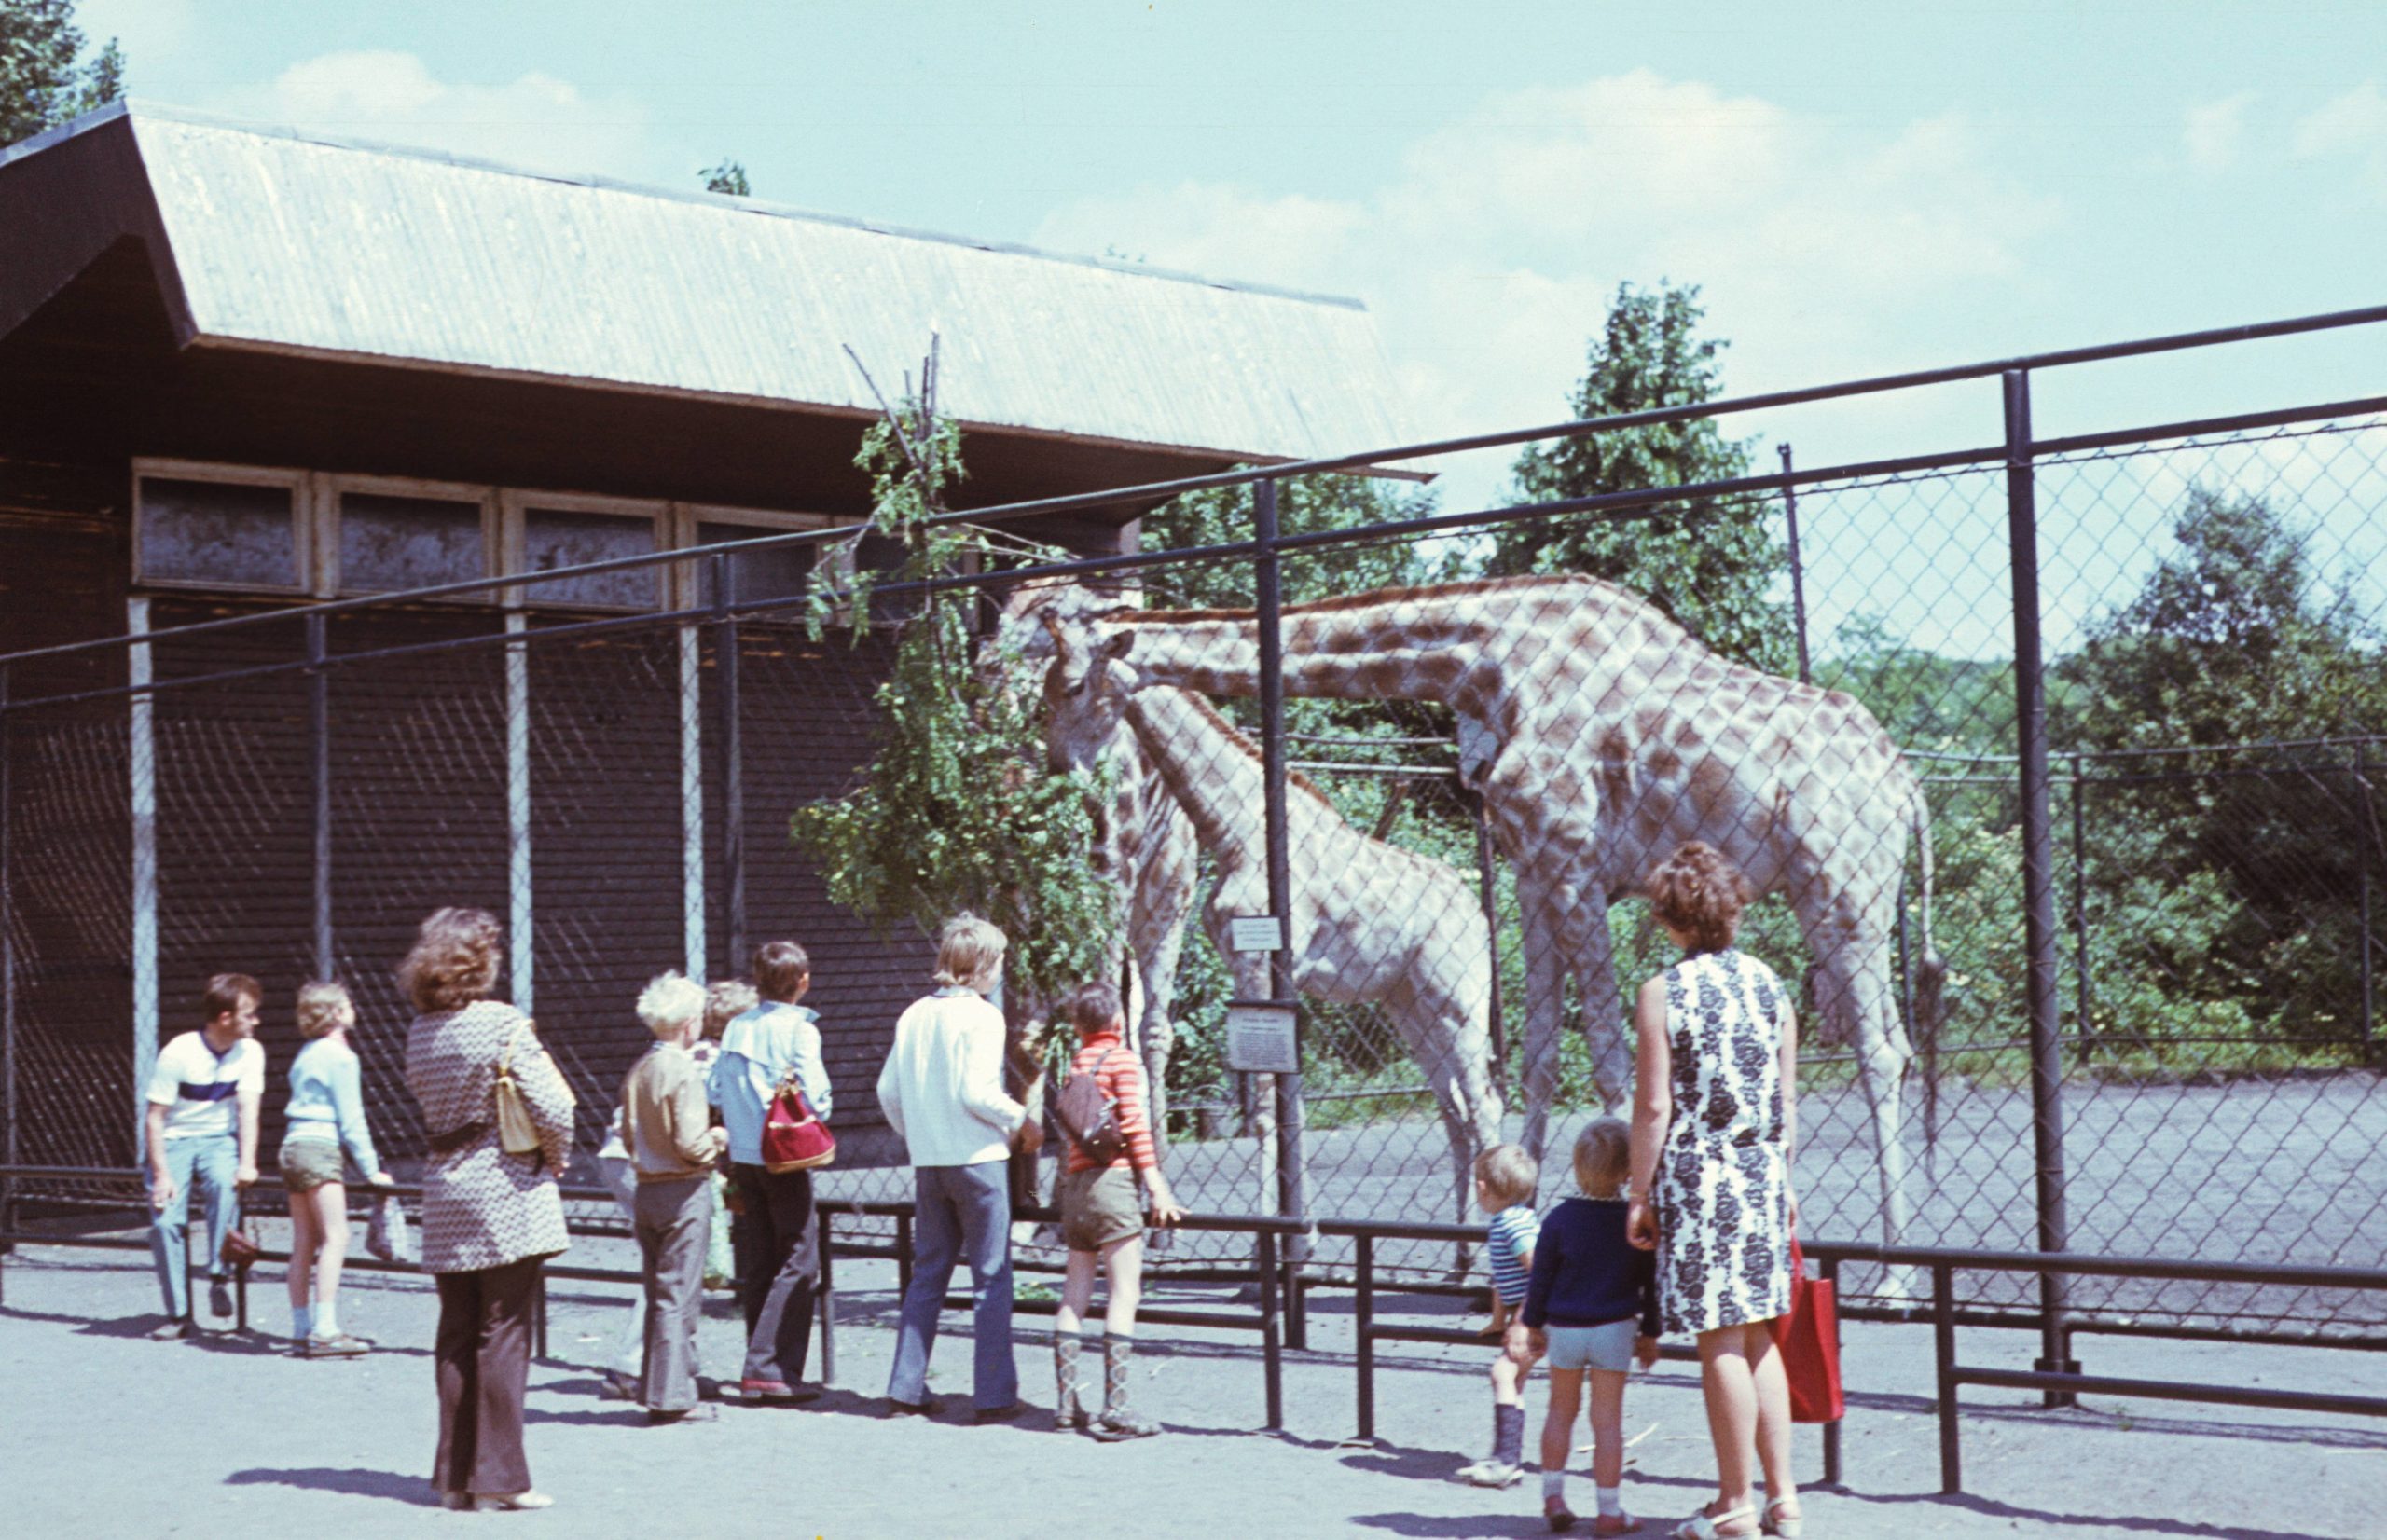 Zoobesucher bei den Giraffen im Tierpark Friedrichsfelde. Foto: Imago/Gerhard Leber